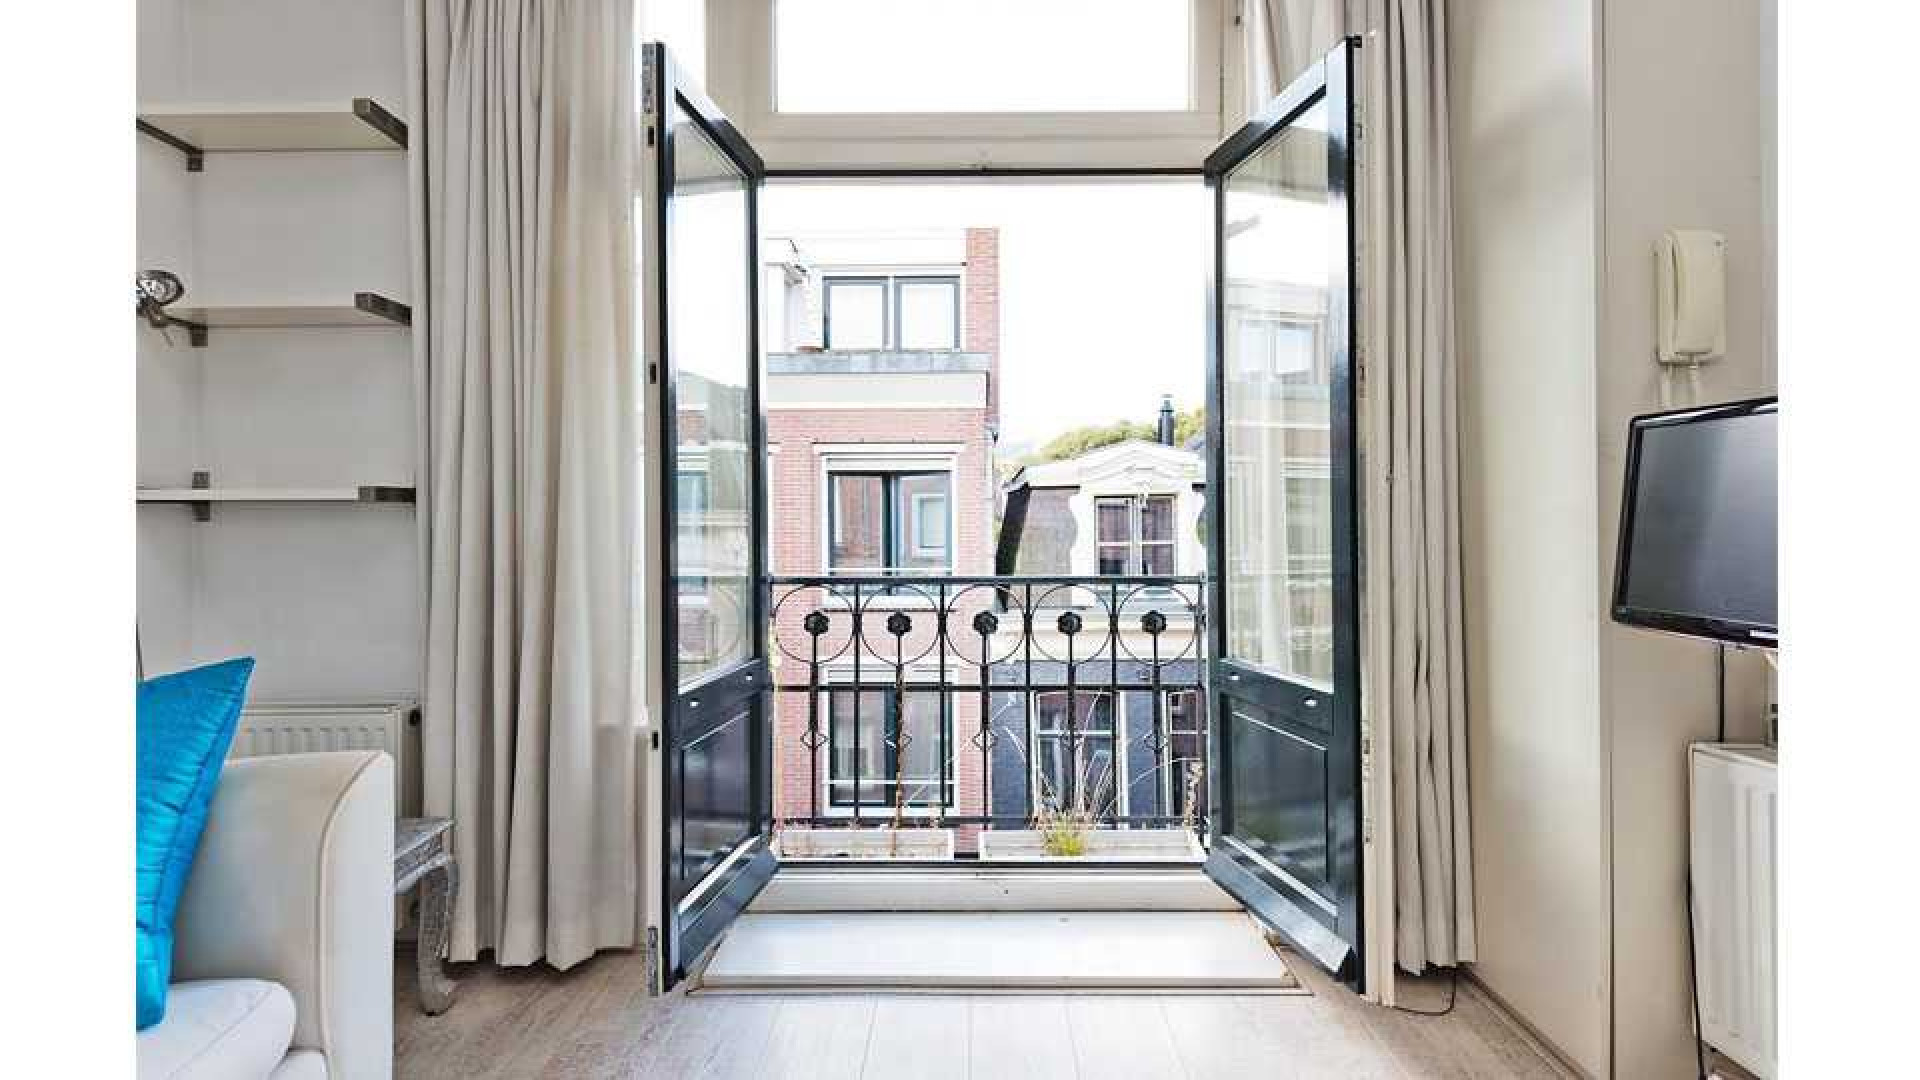 Ronald Koeman maakt vette winst met zijn Amsterdamse appartement. Zie foto's 3